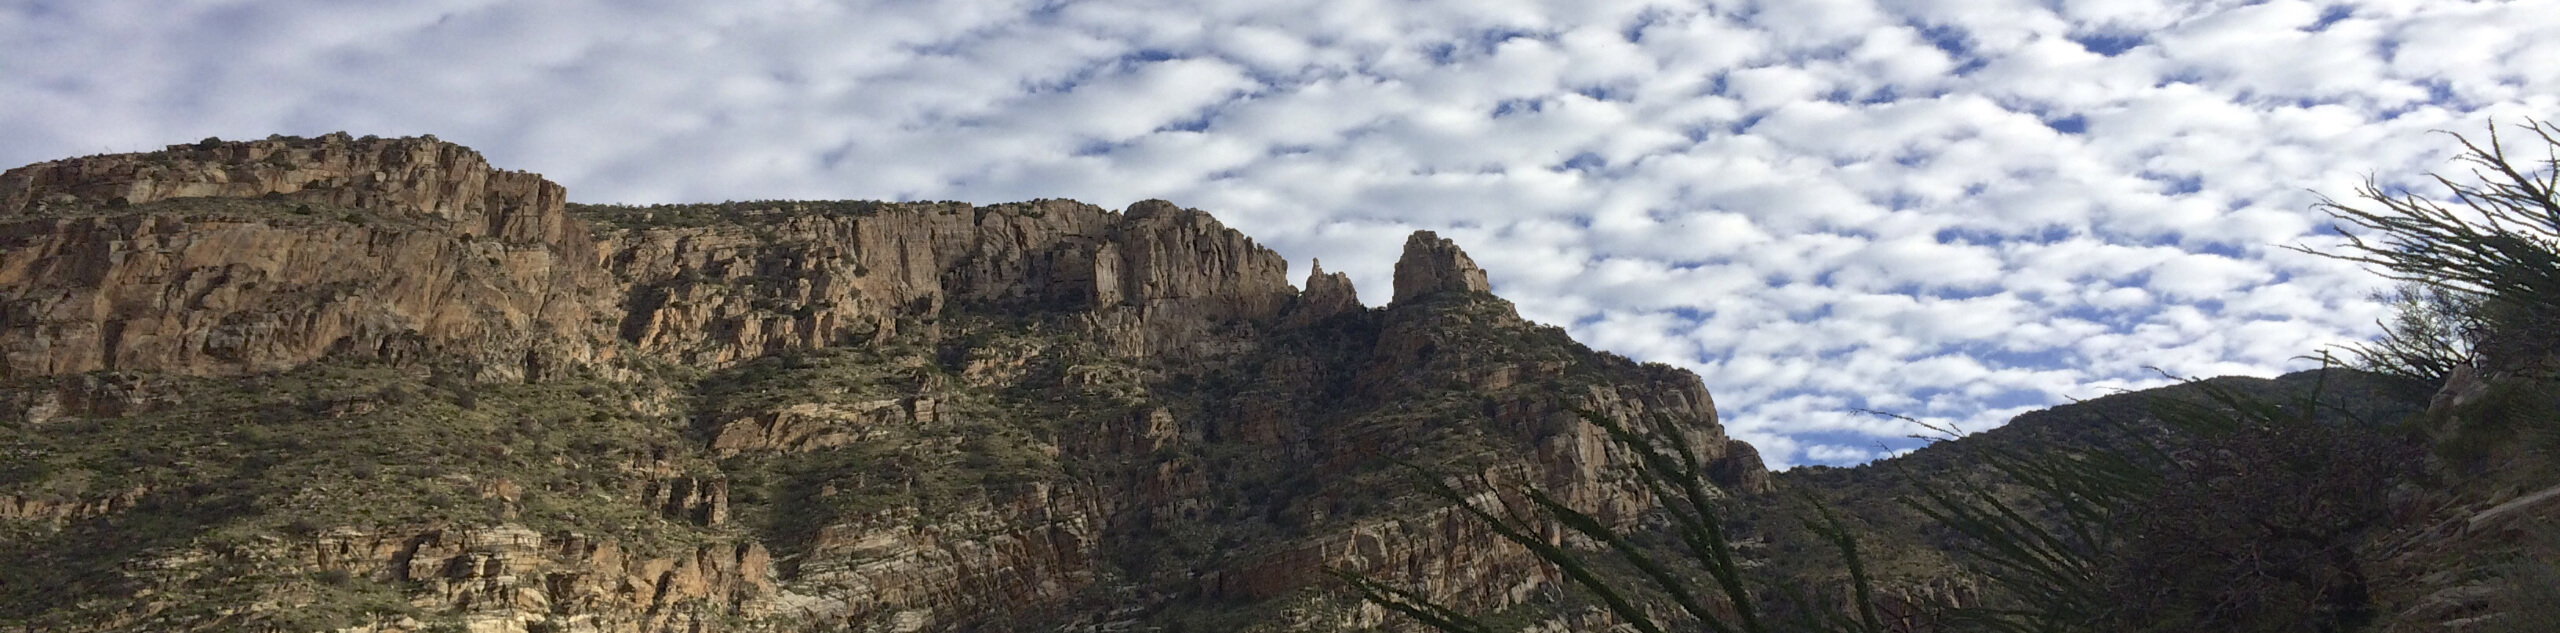 Pontatoc Canyon Trail